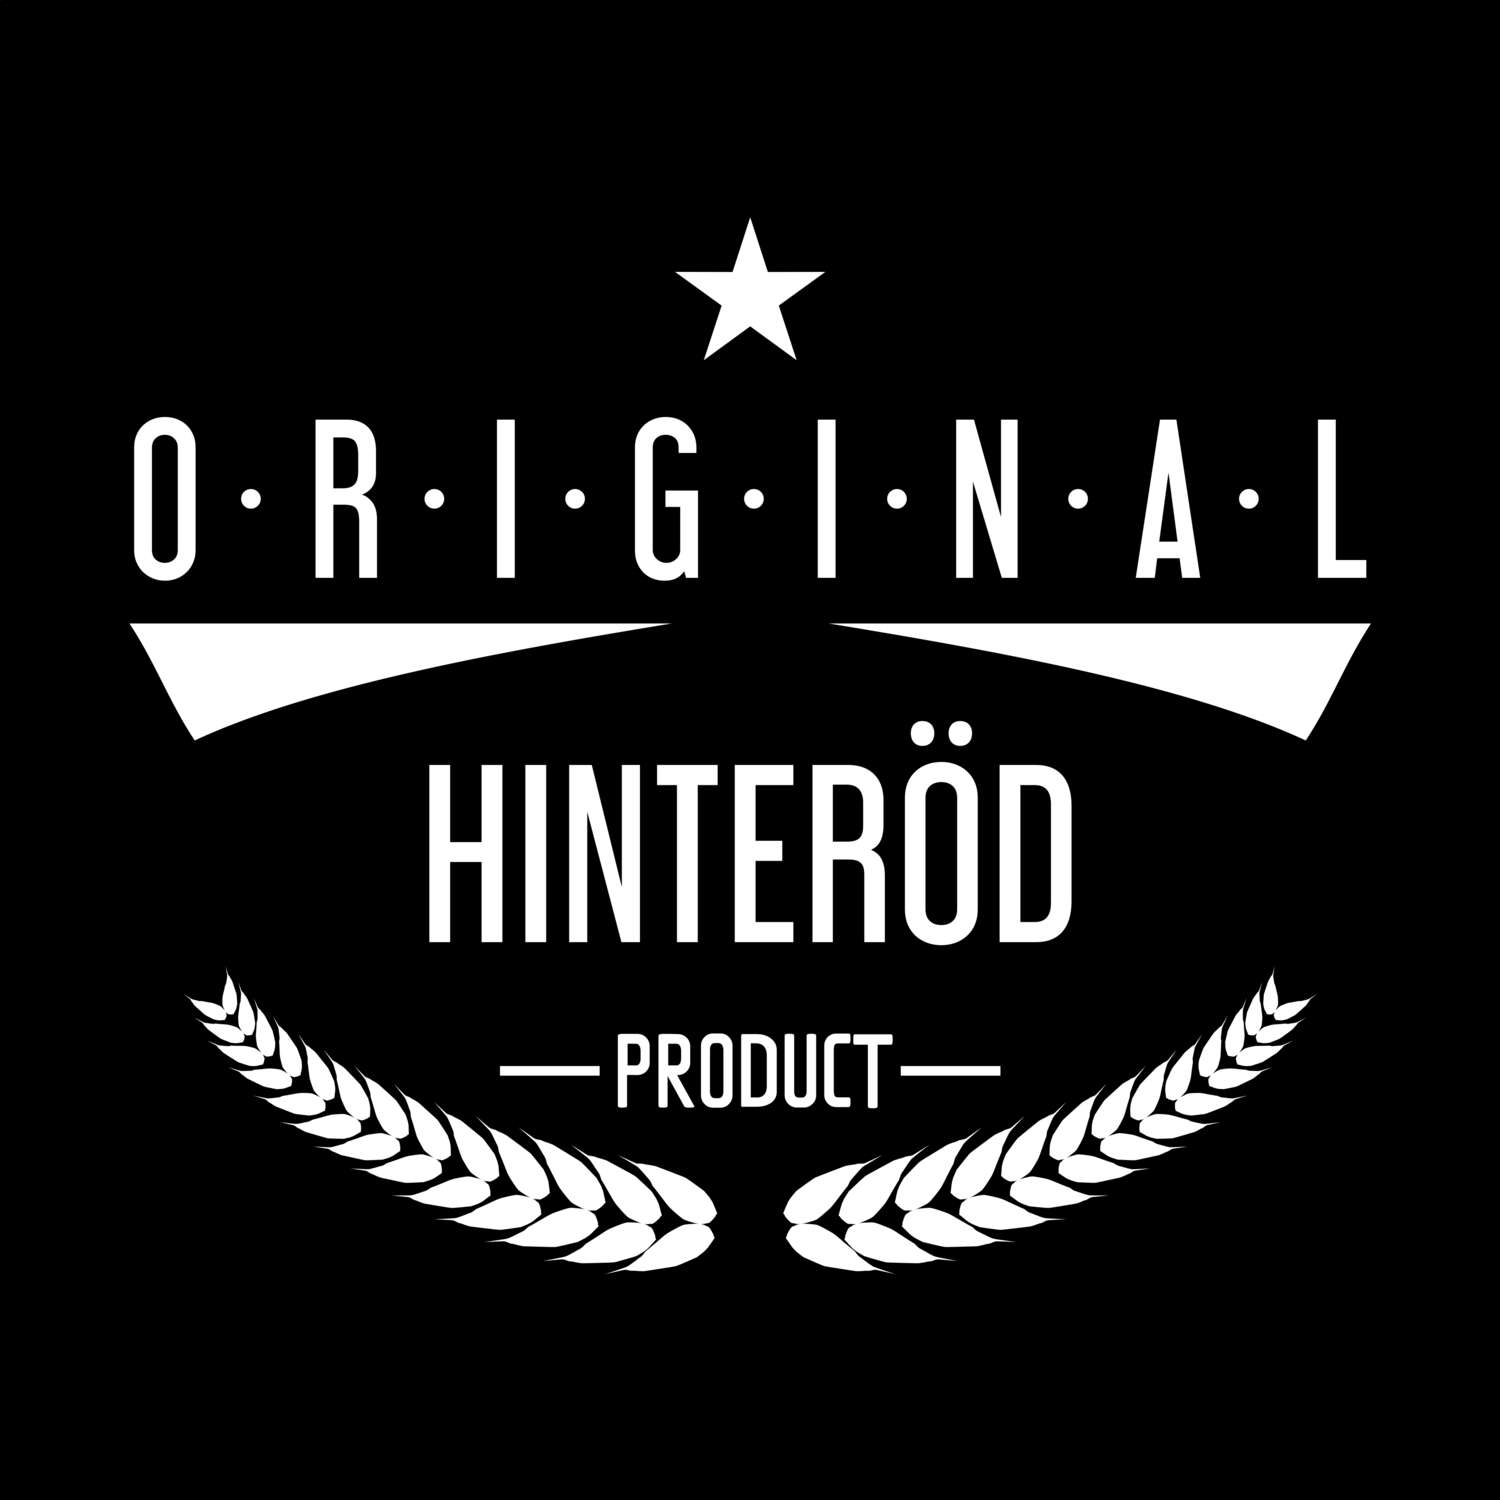 Hinteröd T-Shirt »Original Product«